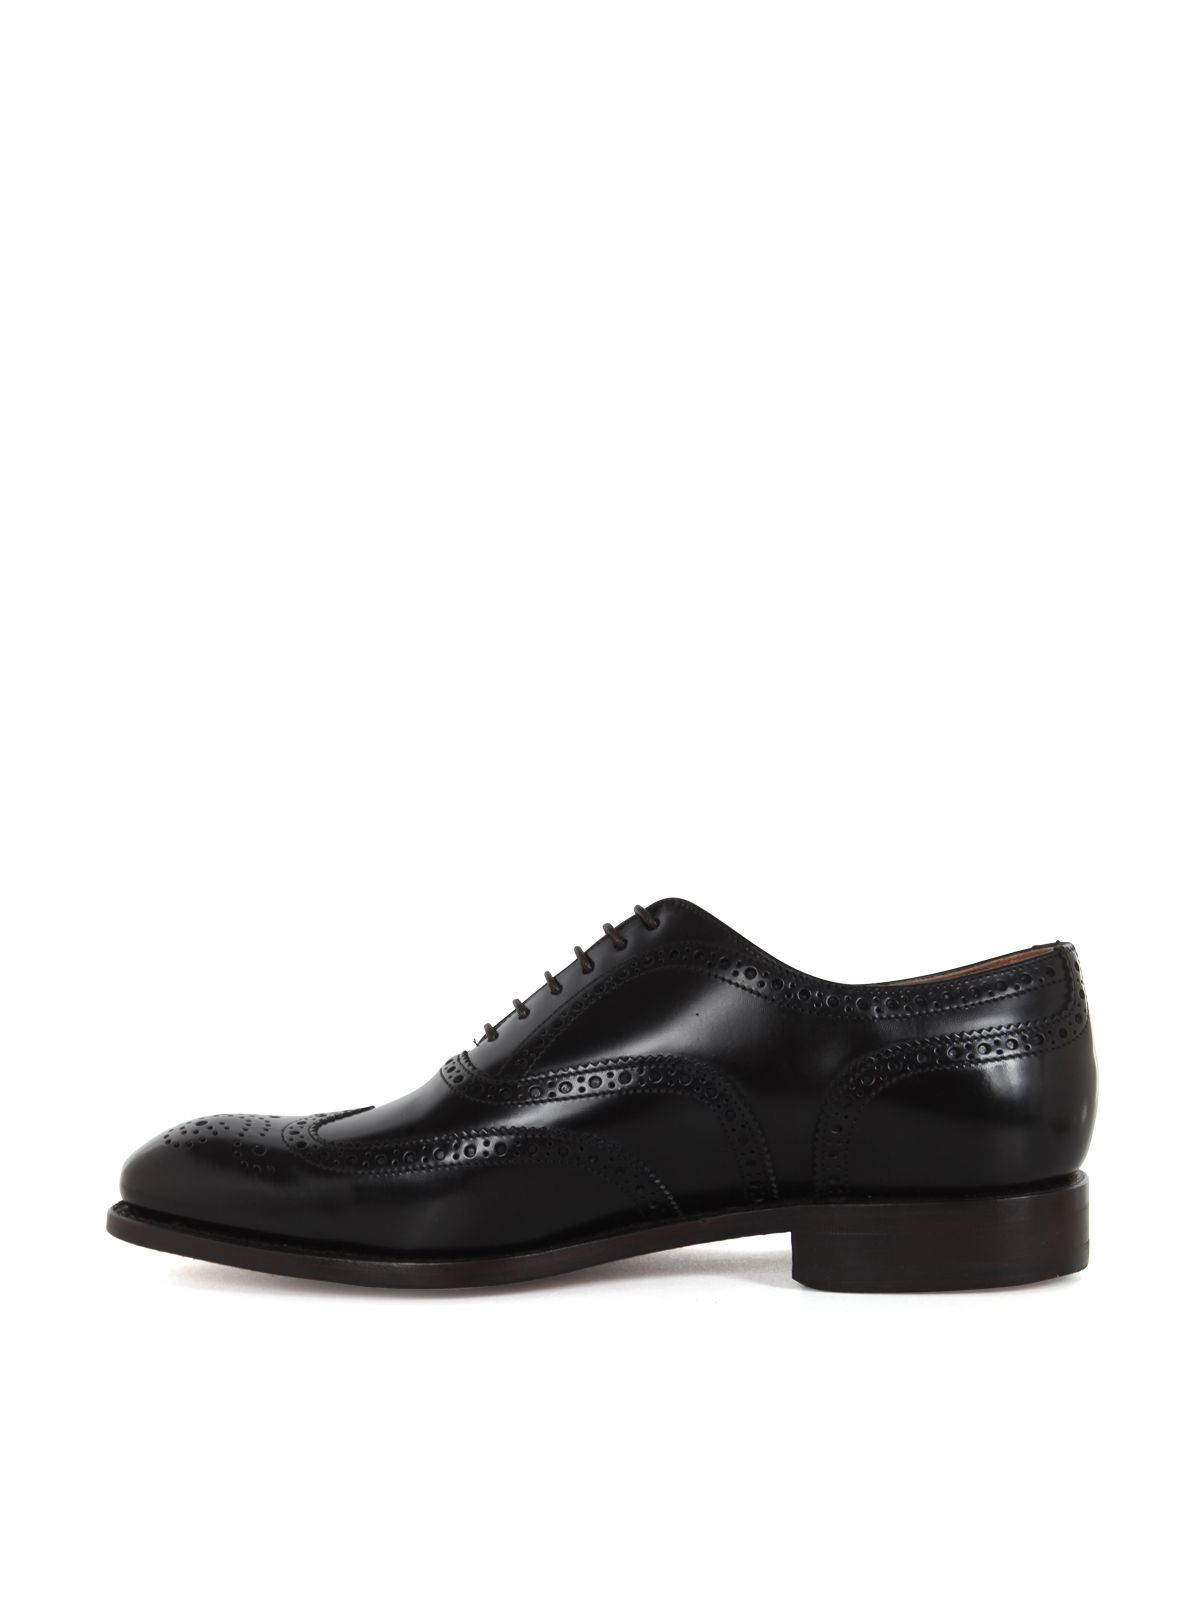 Shop Berwick Men's Laced Leather Shoes